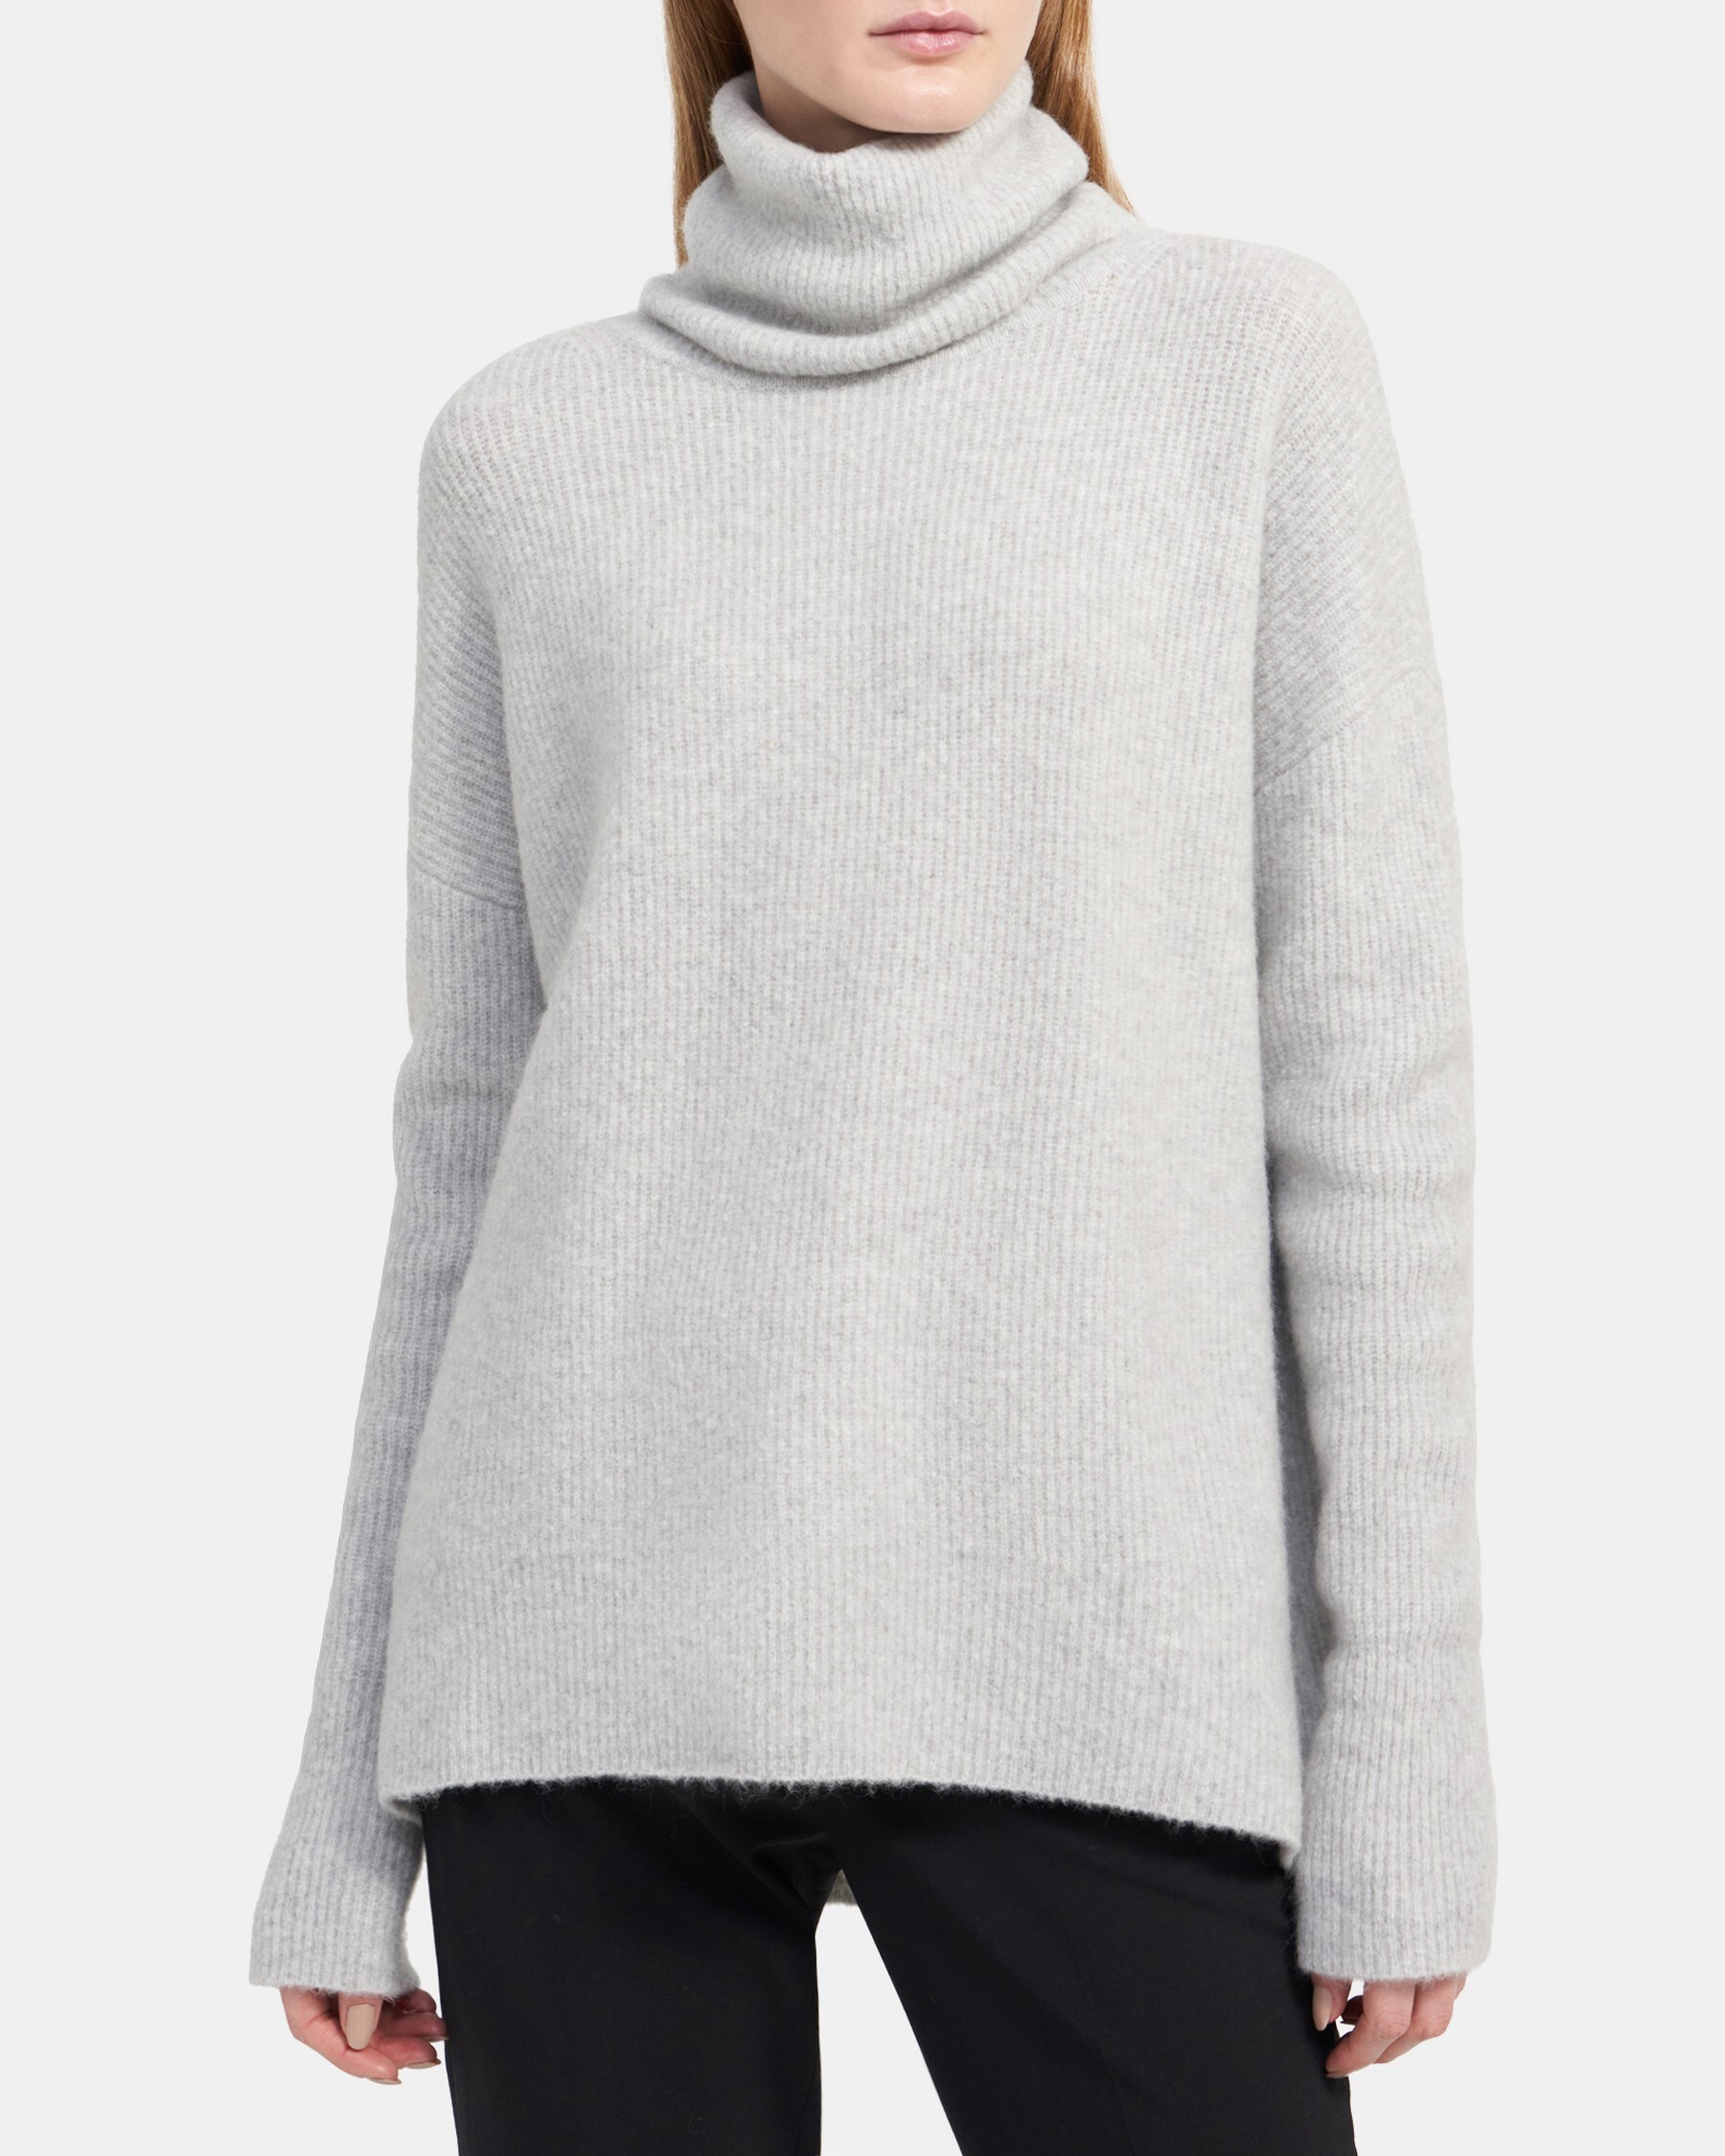 Turtleneck Sweater in Wool